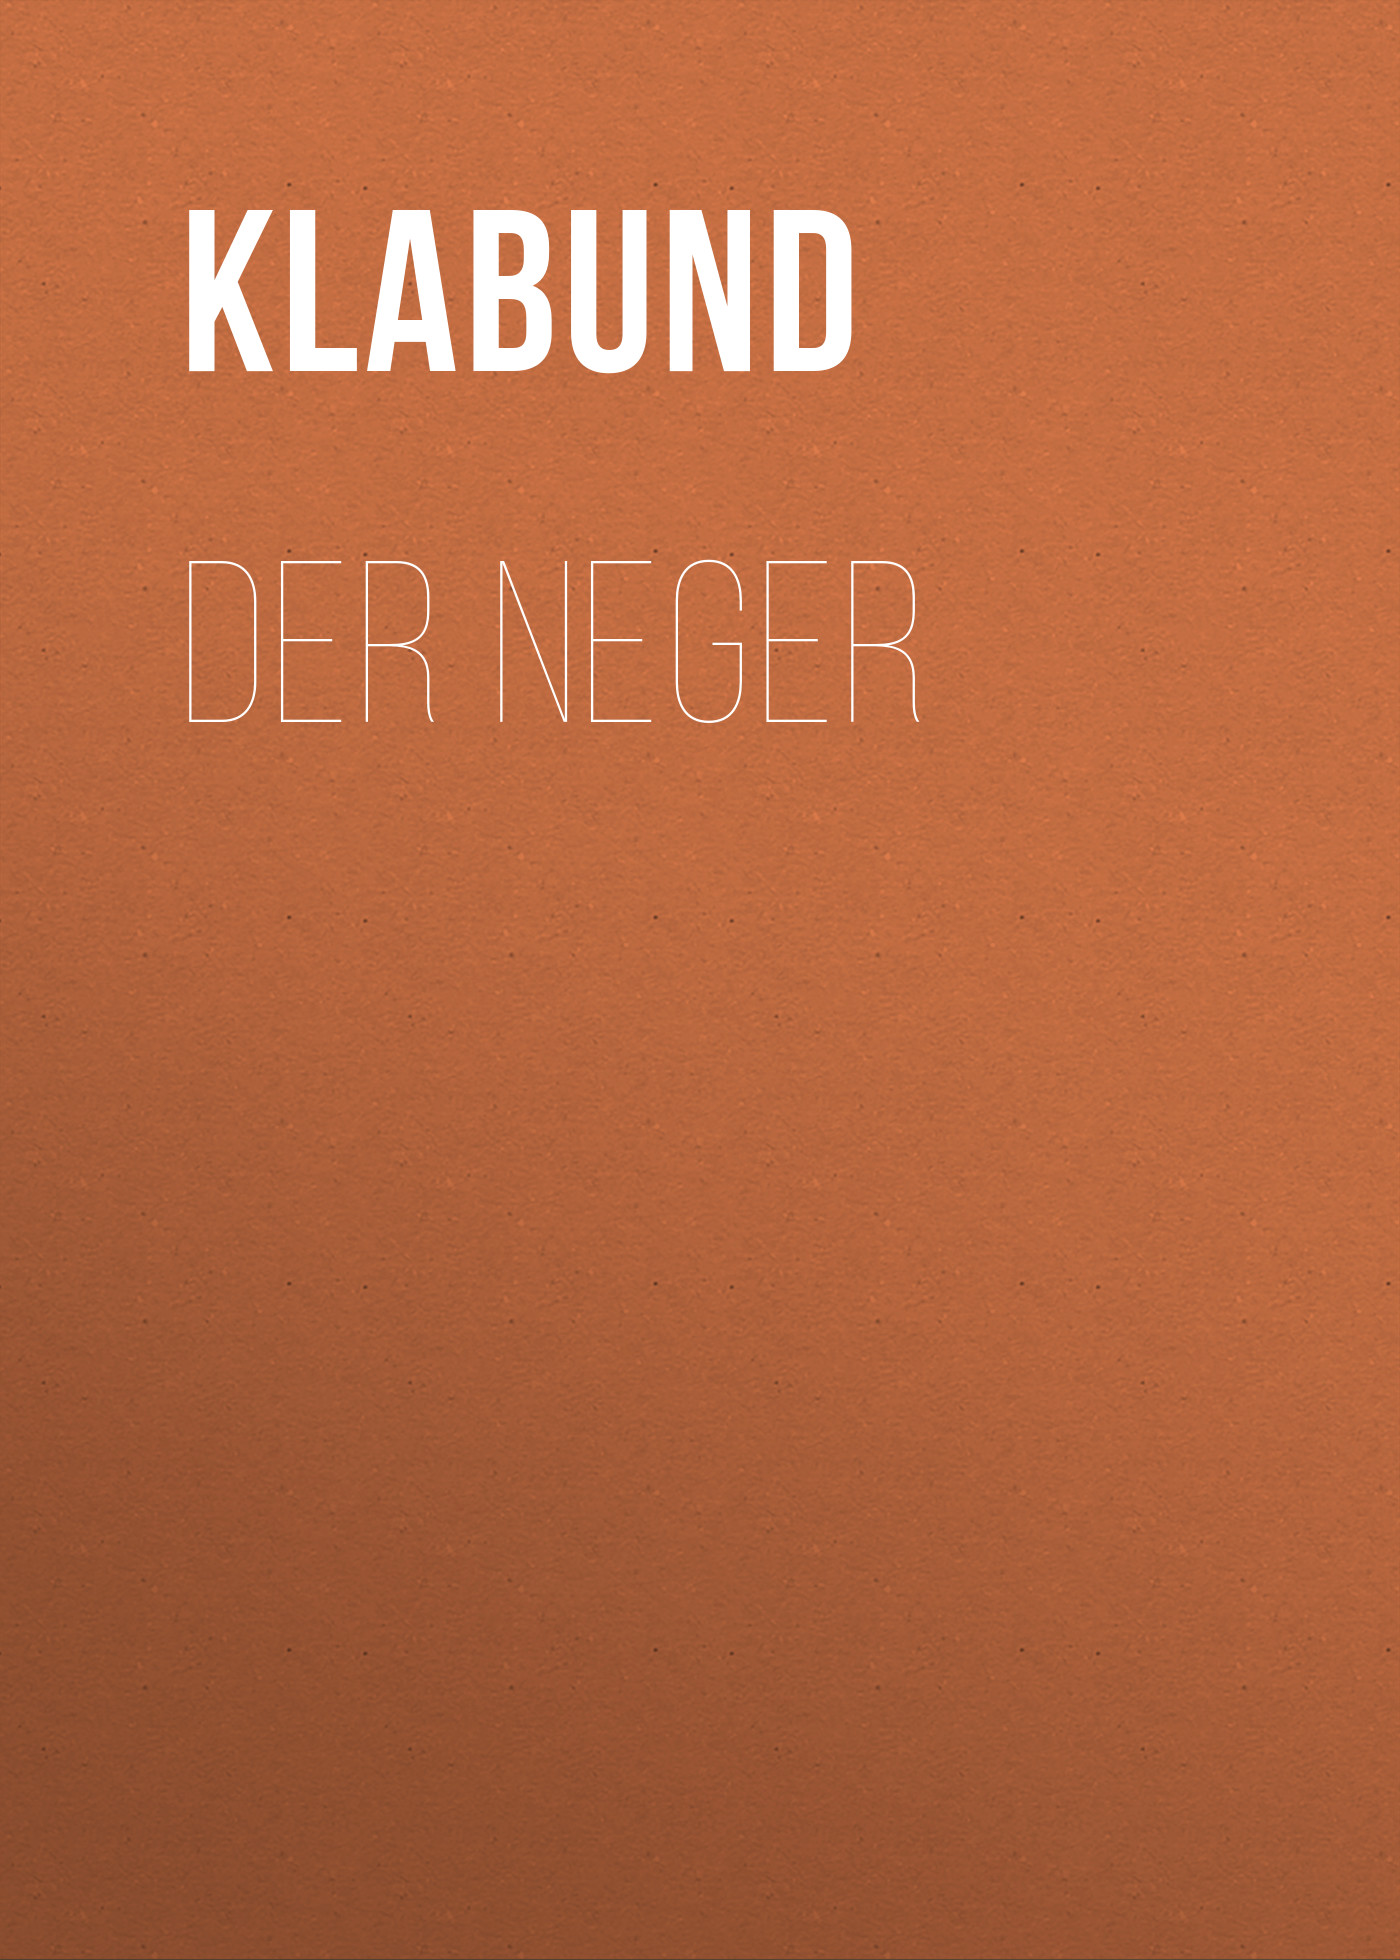 Книга Der Neger из серии , созданная Klabund , может относится к жанру Зарубежная классика. Стоимость электронной книги Der Neger с идентификатором 48633940 составляет 0 руб.